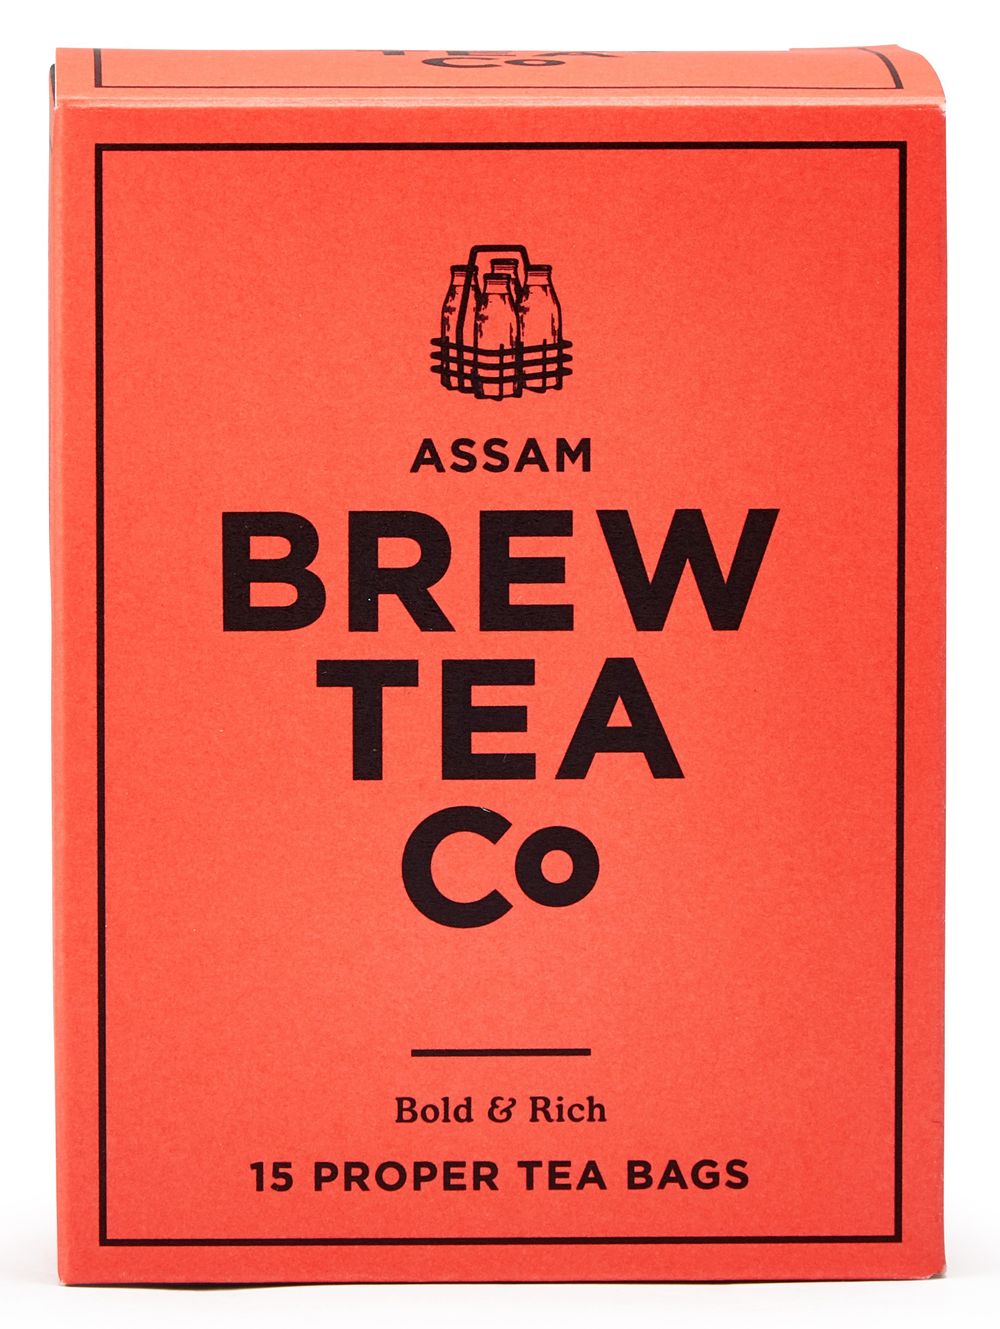 Assam Tea - 15 Proper Tea Bags